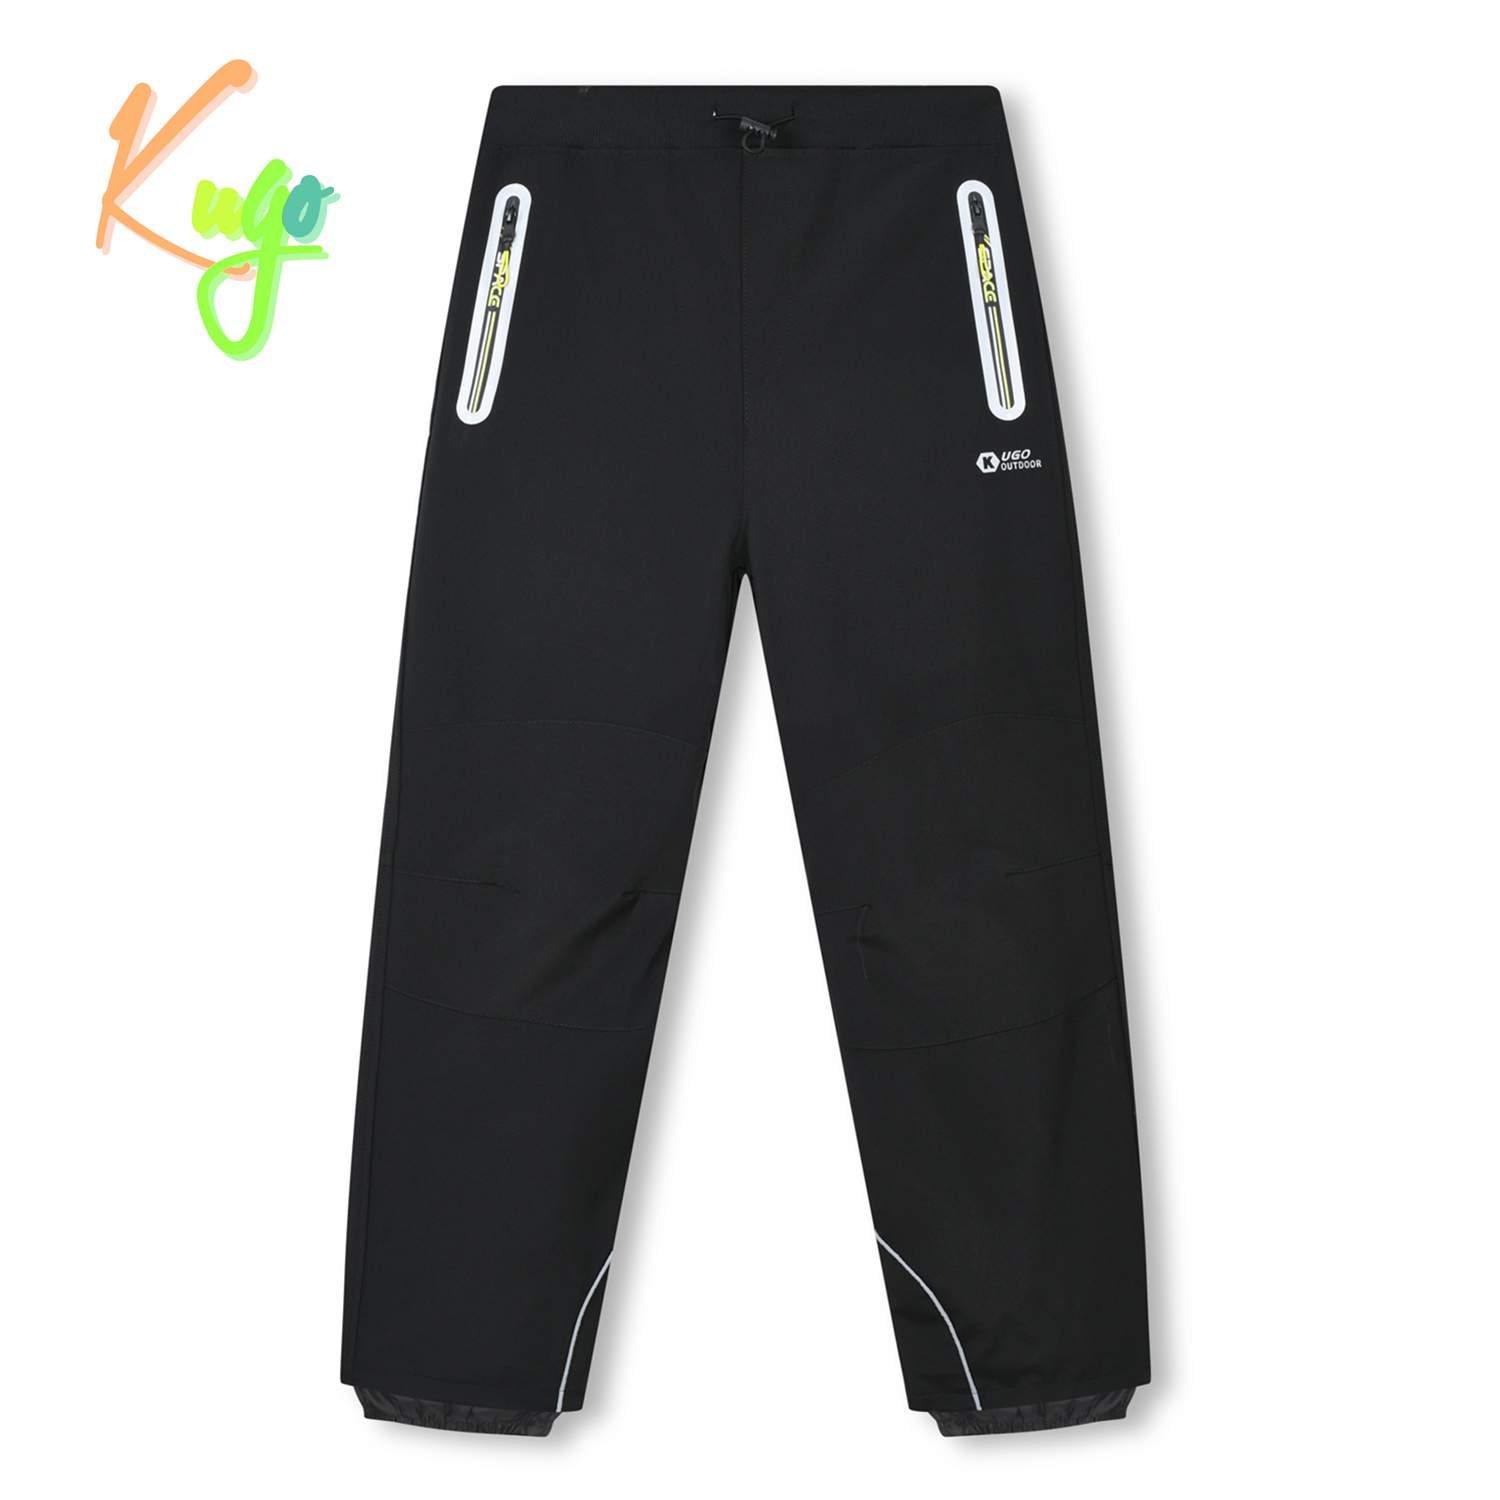 Chlapecké softshellové kalhoty - KUGO HK3119, černá / signální zipy Barva: Černá, Velikost: 146